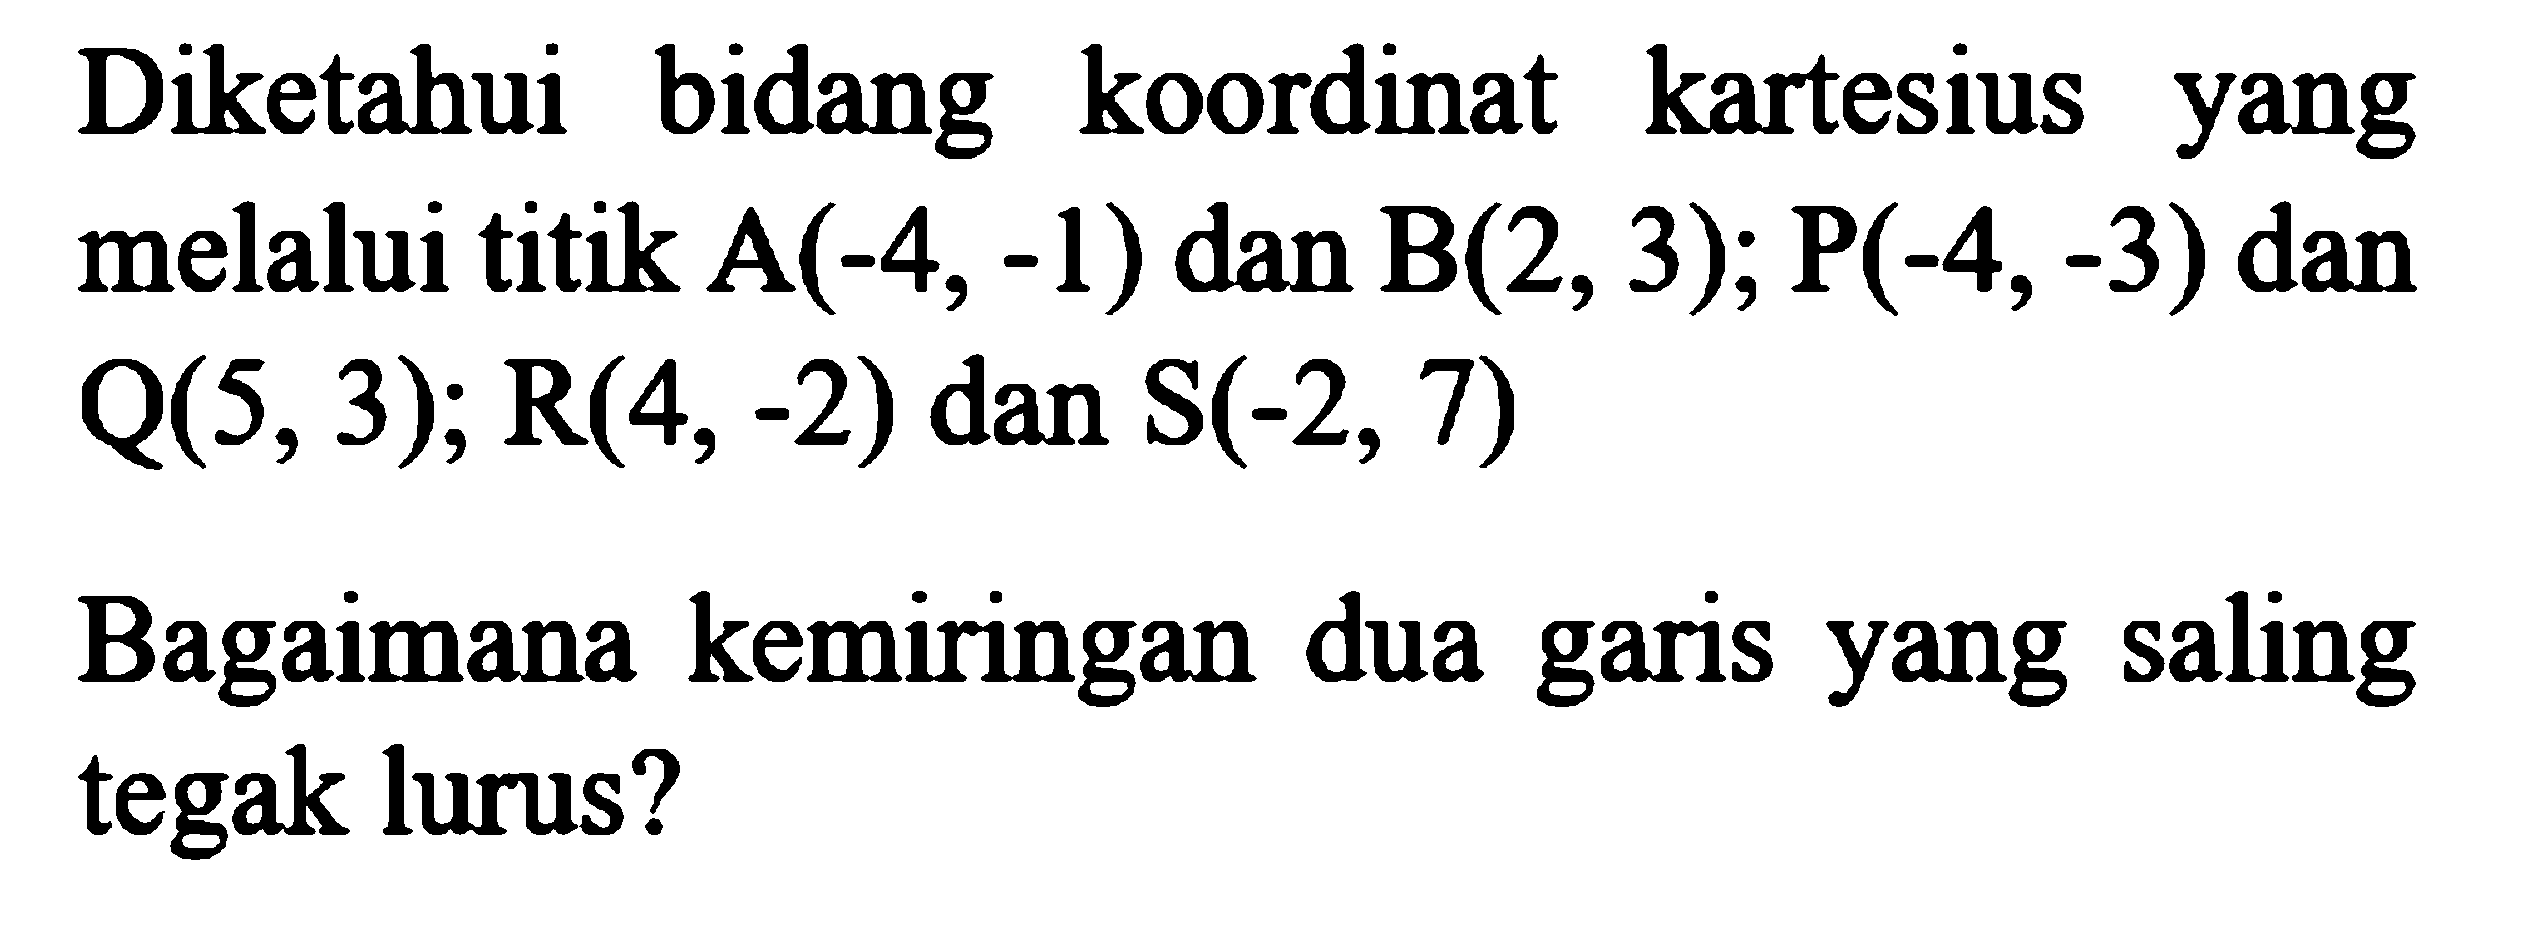 Diketahui bidang koordinat kartesius yang melalui titik A(-4, -1) dan B(2,3); P(-4,-3) dan Q(5,3); R(4, -2) dan S(-2, 7) Bagaimana kemiringan dua garis yang saling tegak lurus?